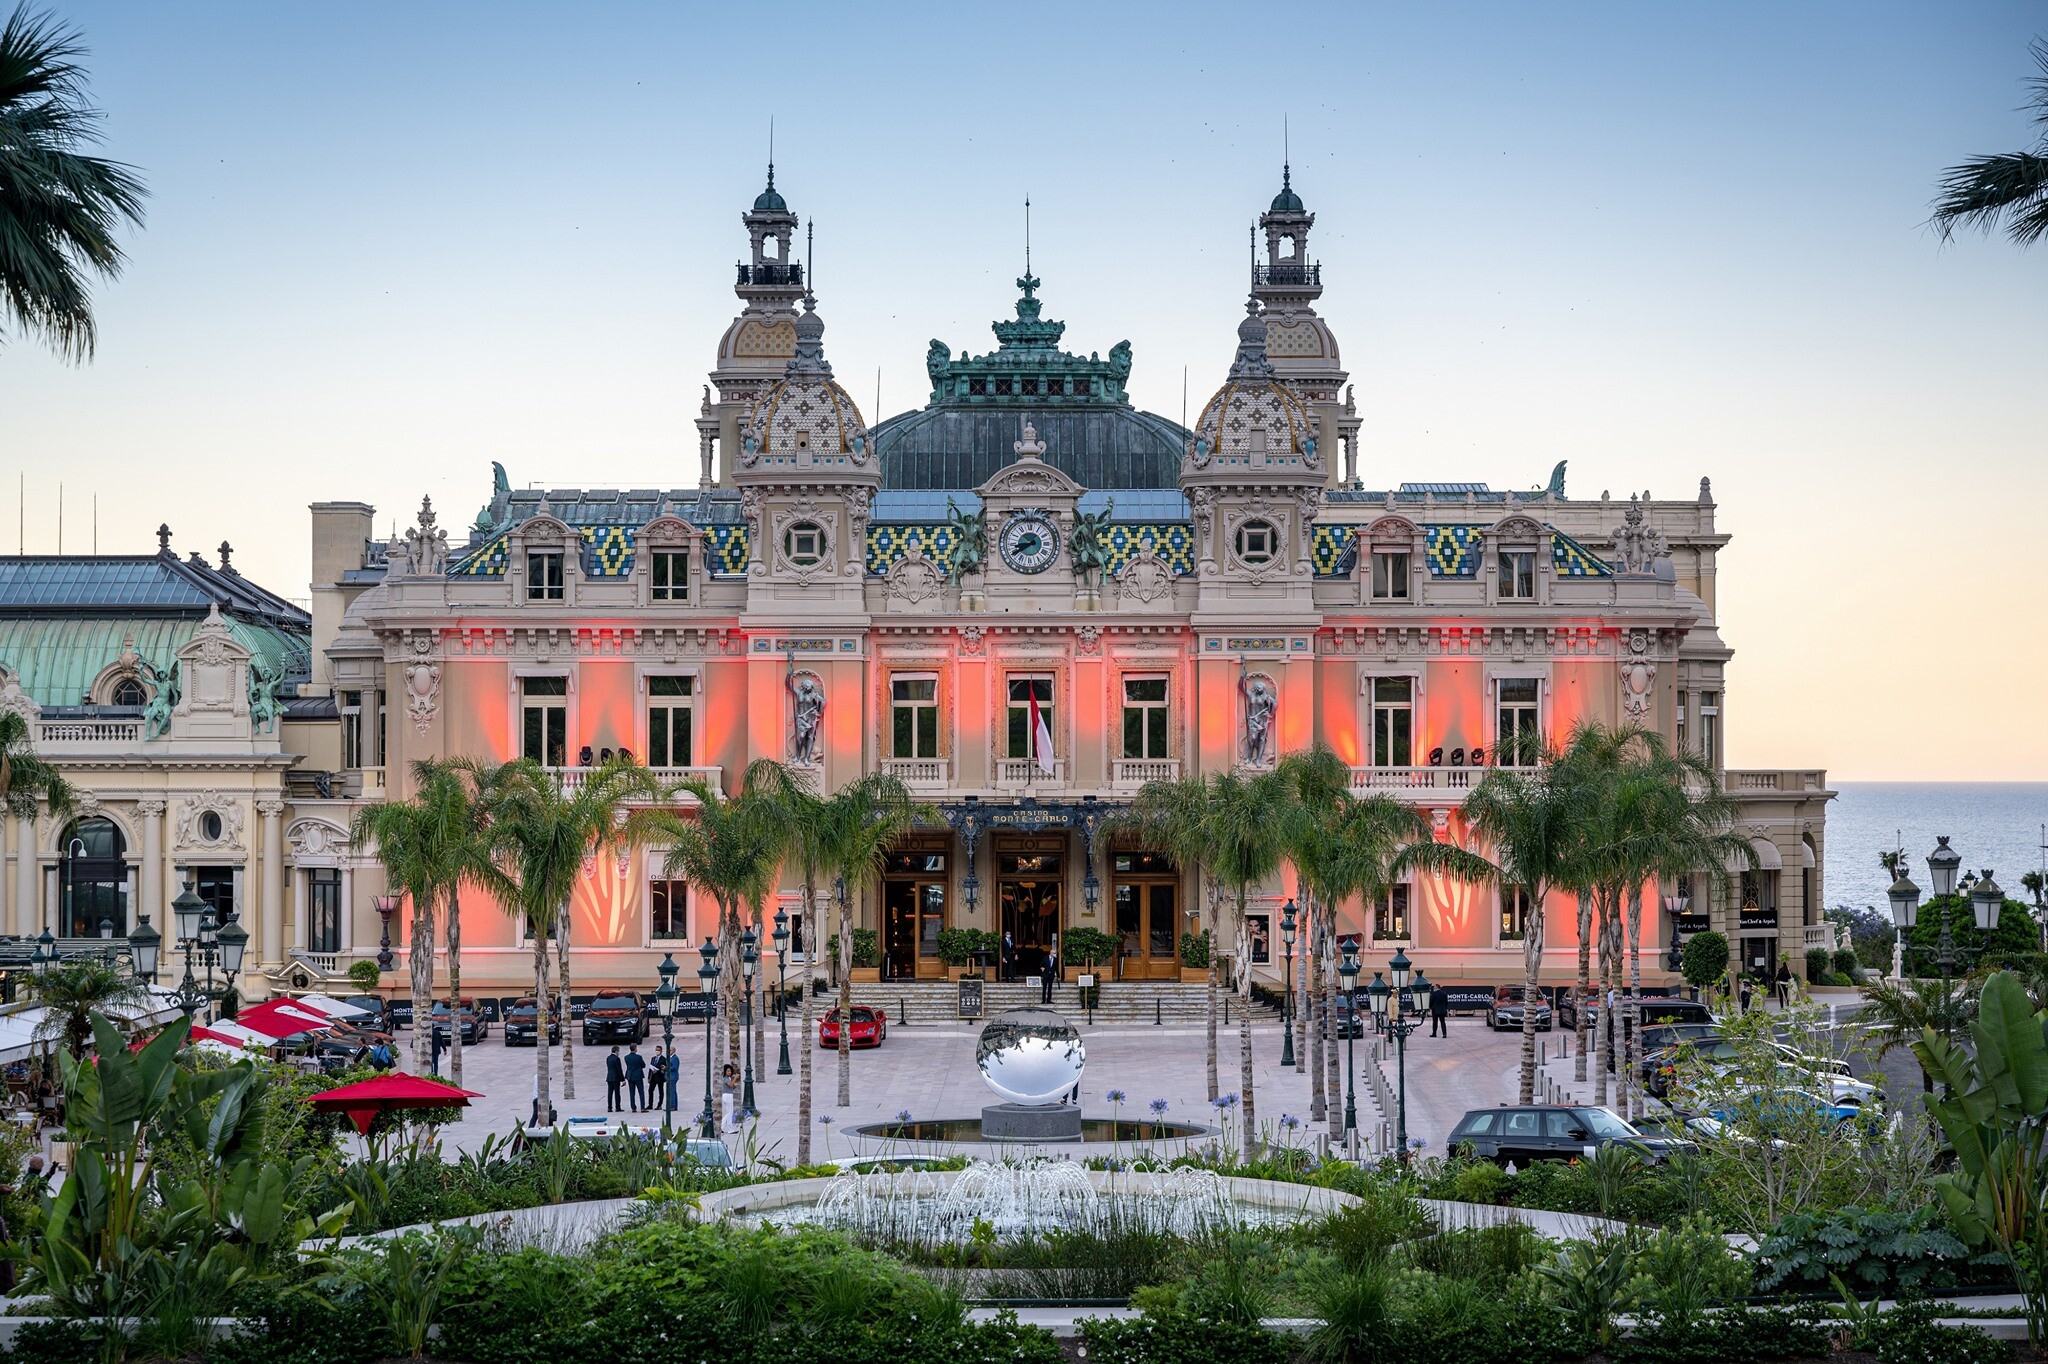 Casino de Monte Carlo overview